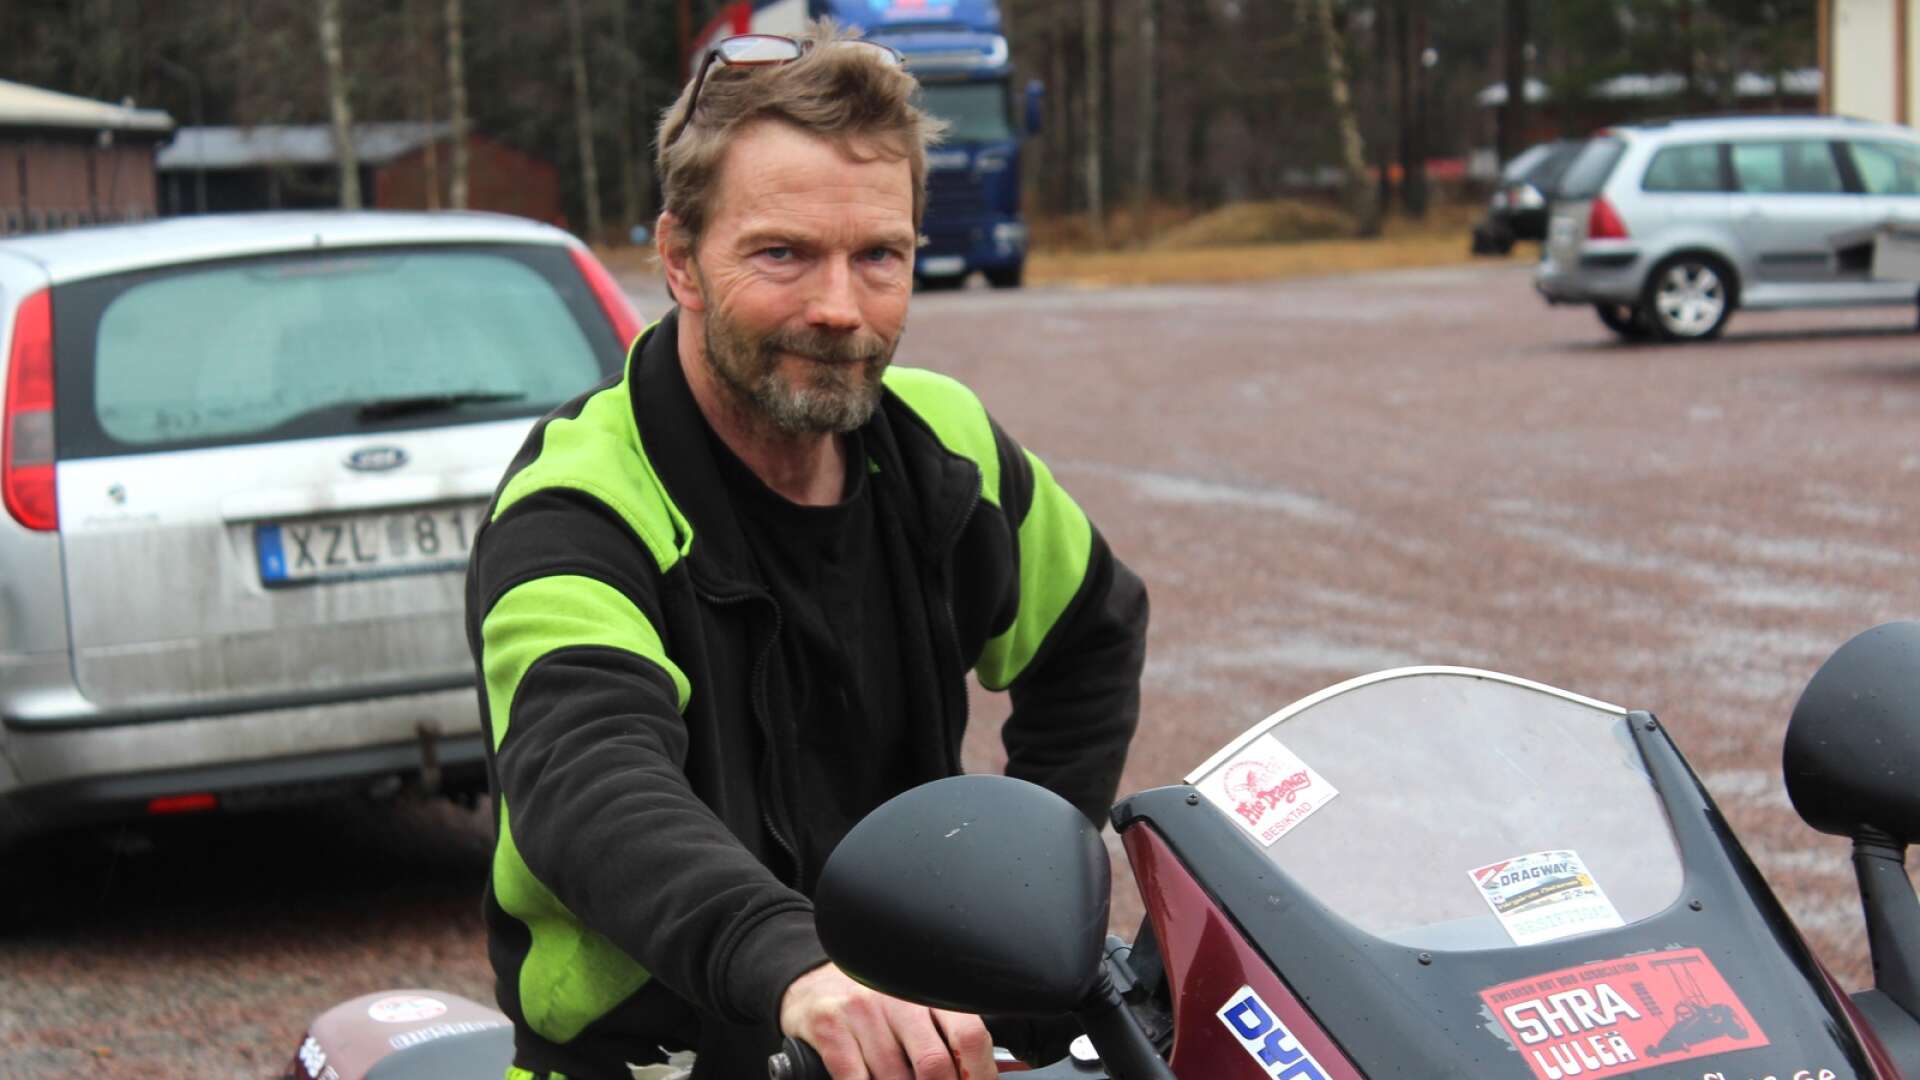 Harri Mäenpää är en av alla kristinehamnare som kommer delta i mc-kortegen på långfredagen.